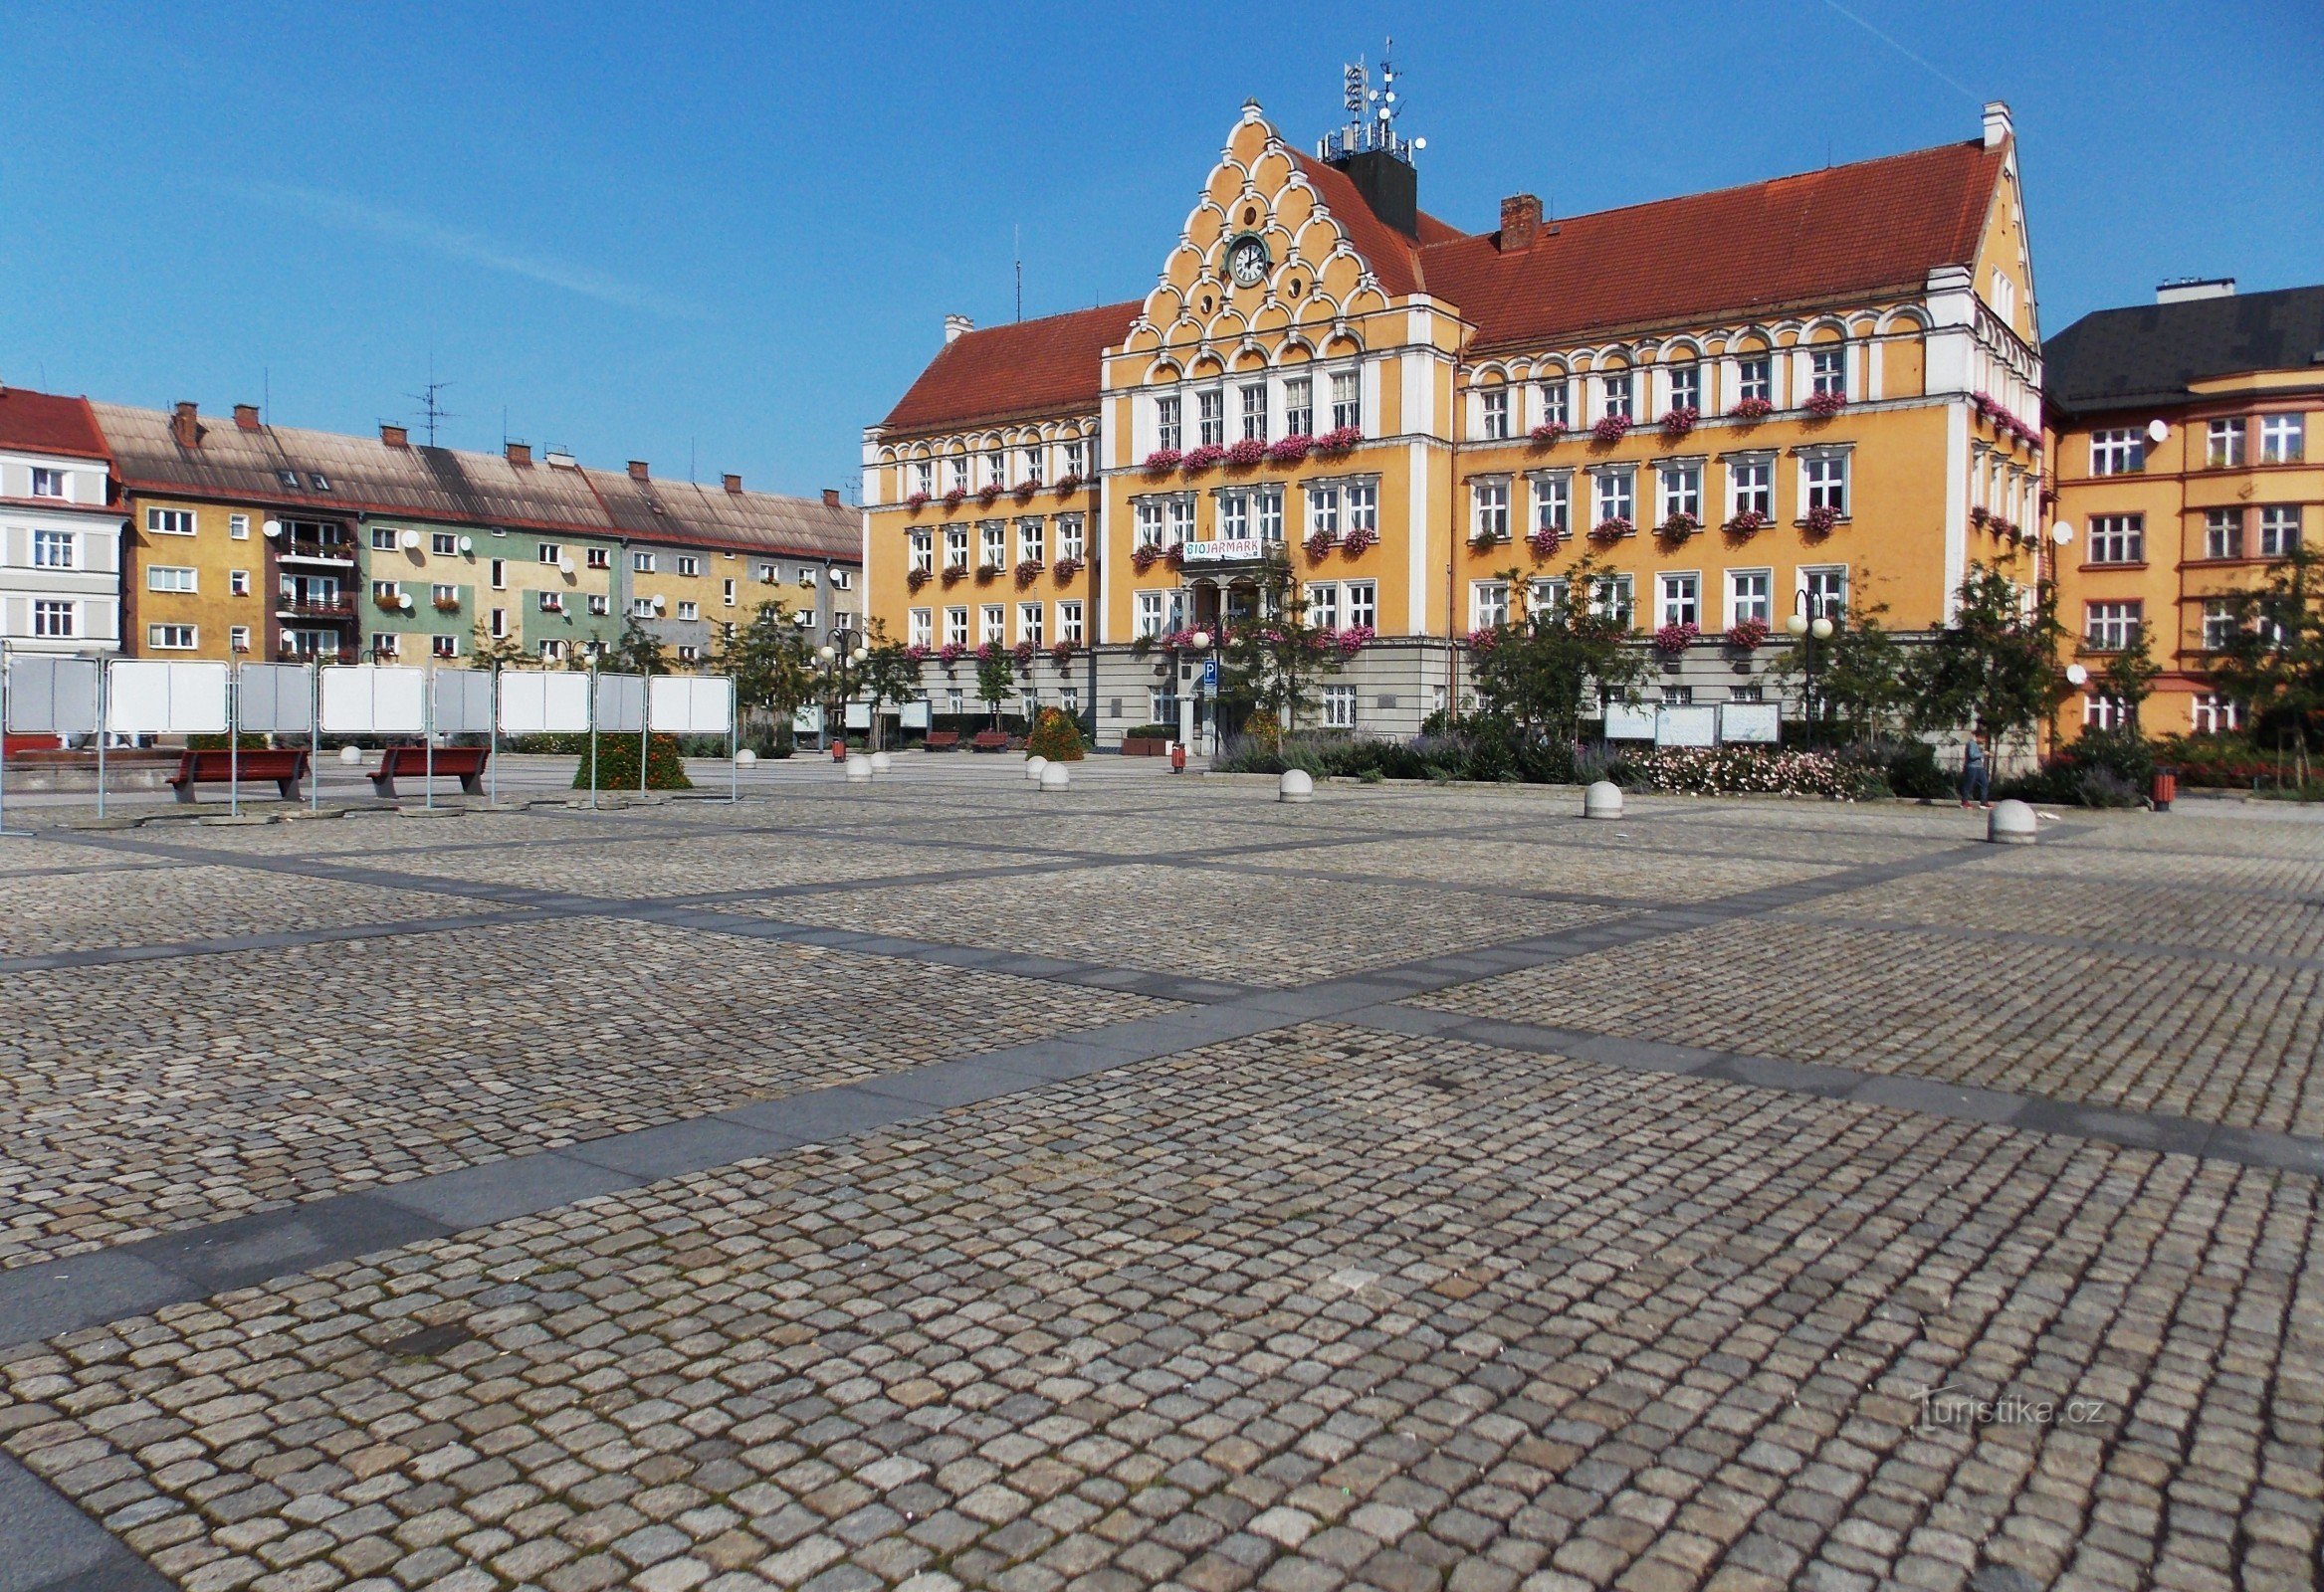 Dominanta trga Těšín je stavba mestne hiše